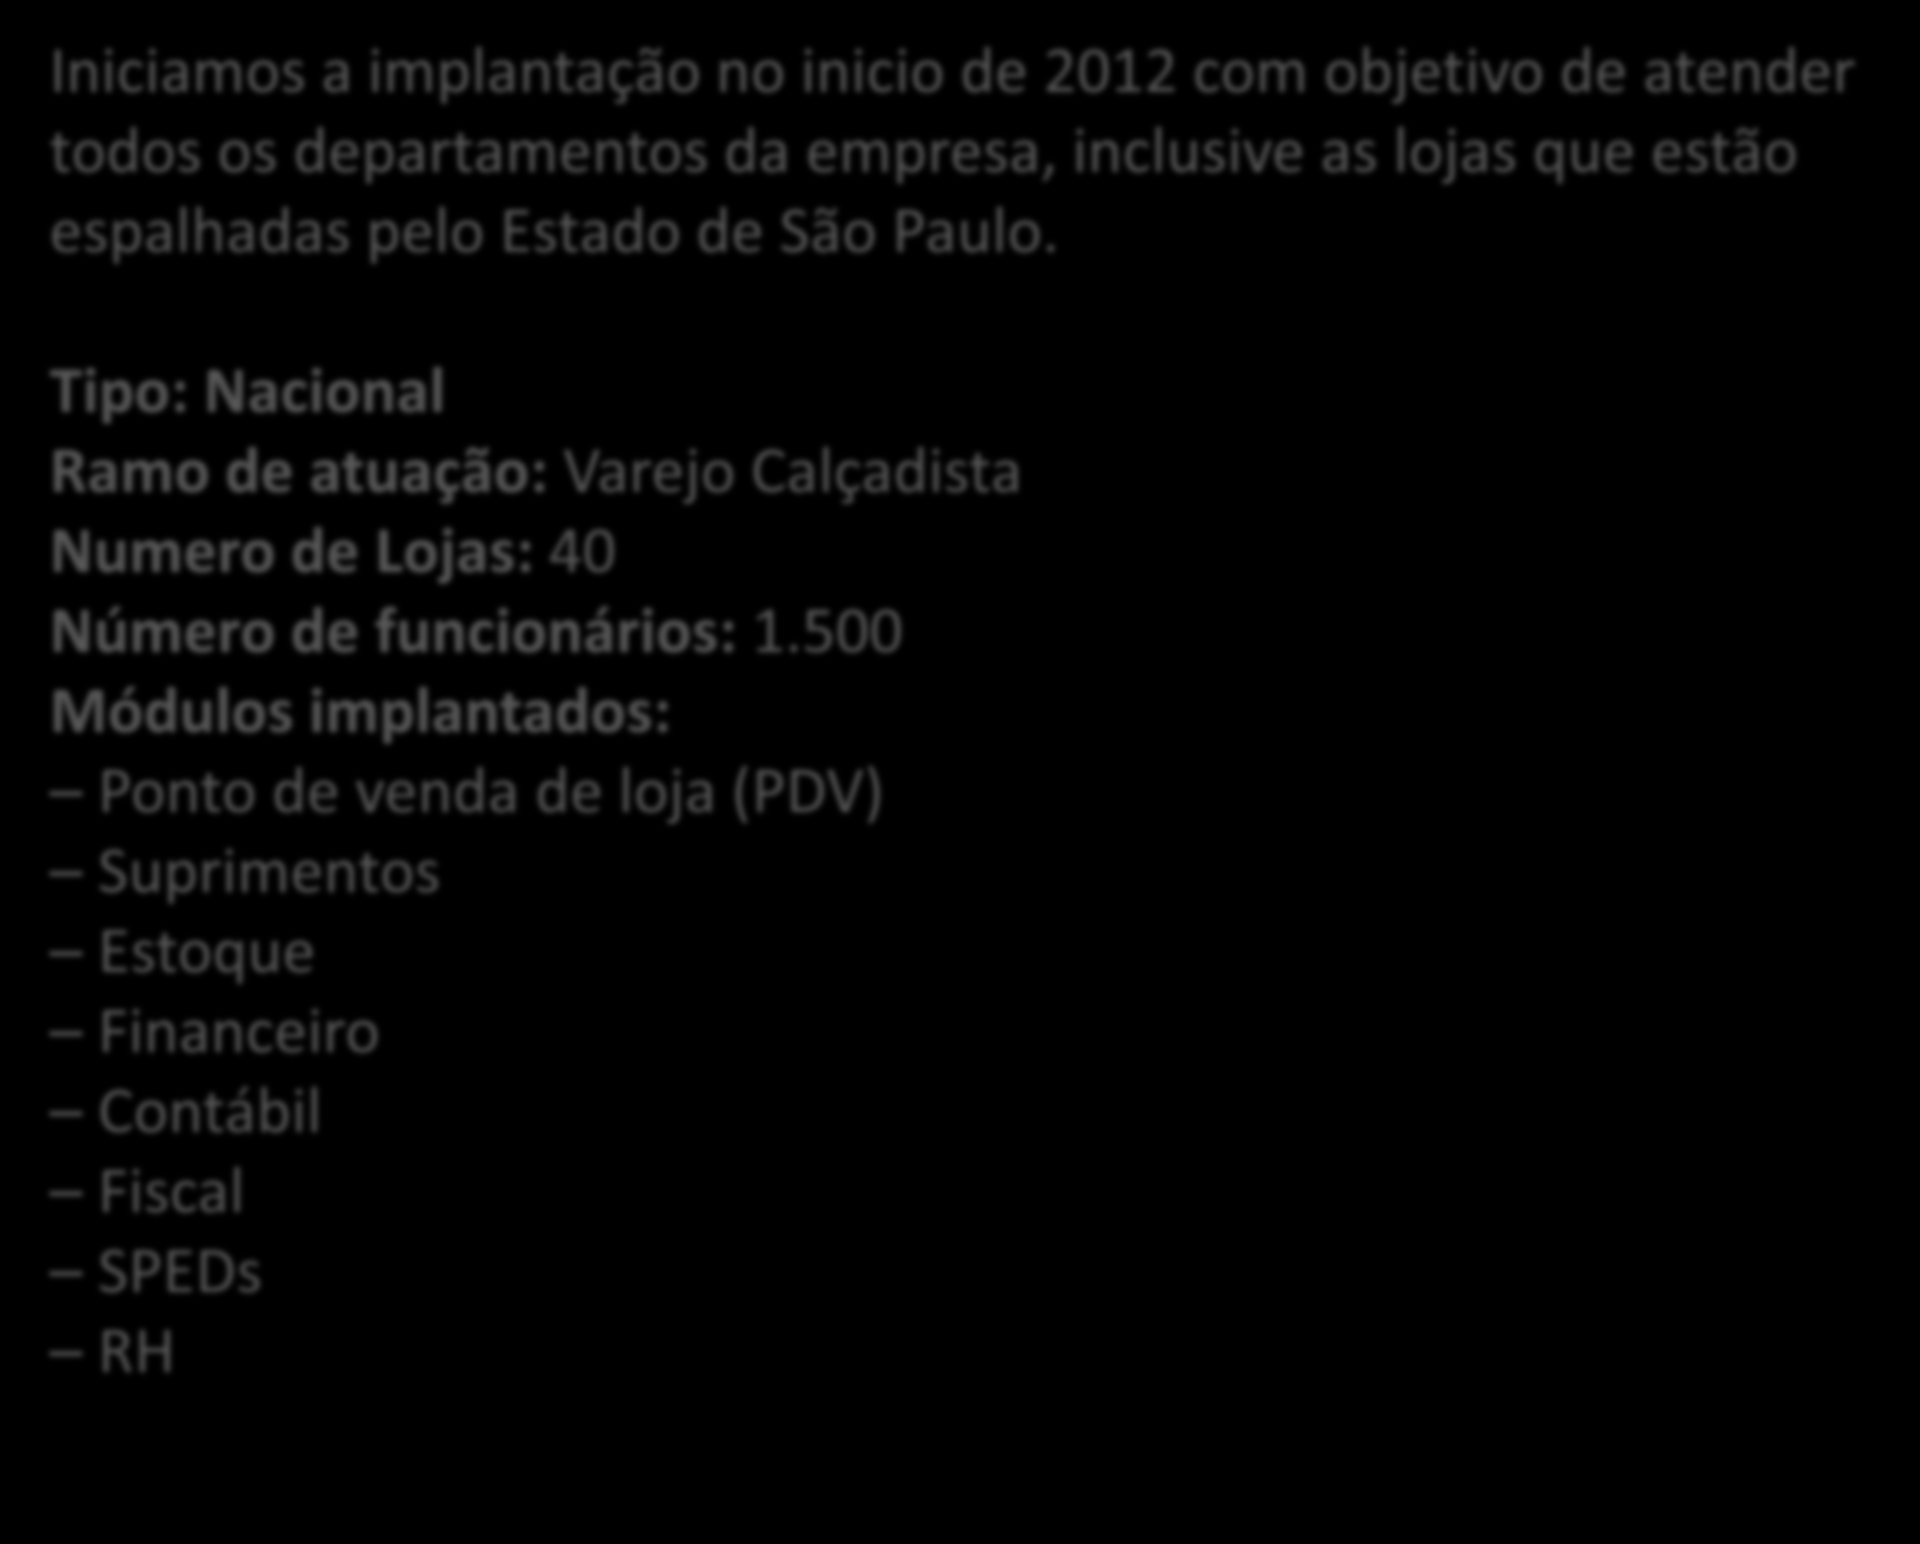 Iniciamos a implantação no inicio de 2012 com objetivo de atender todos os departamentos da empresa, inclusive as lojas que estão espalhadas pelo Estado de São Paulo.